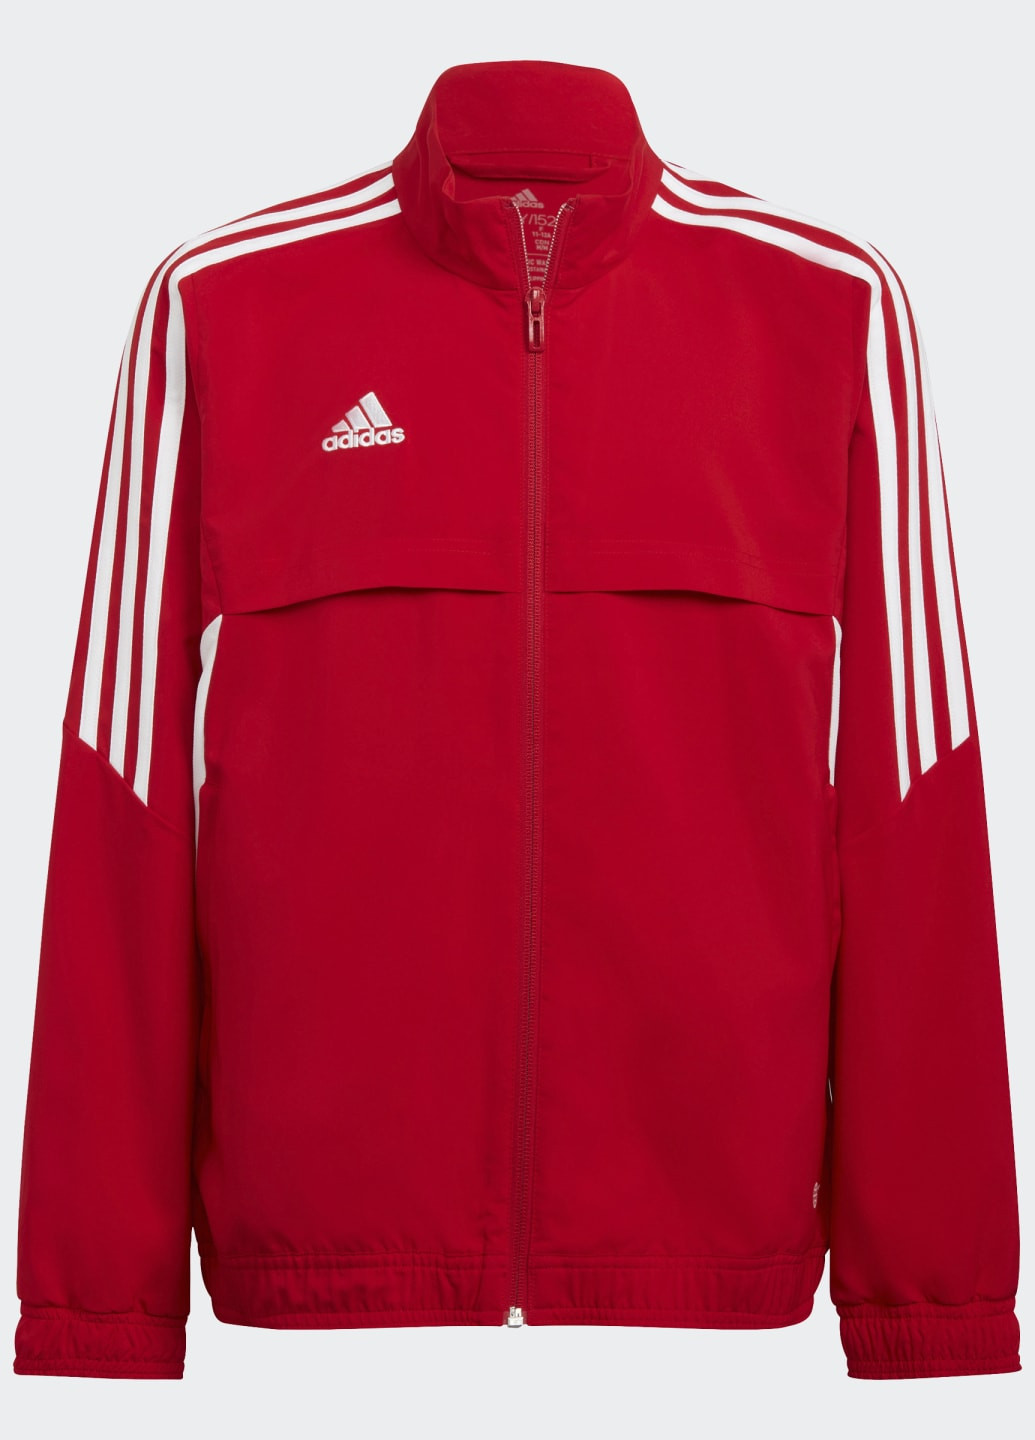 Червона літня куртка condivo 22 presantation adidas